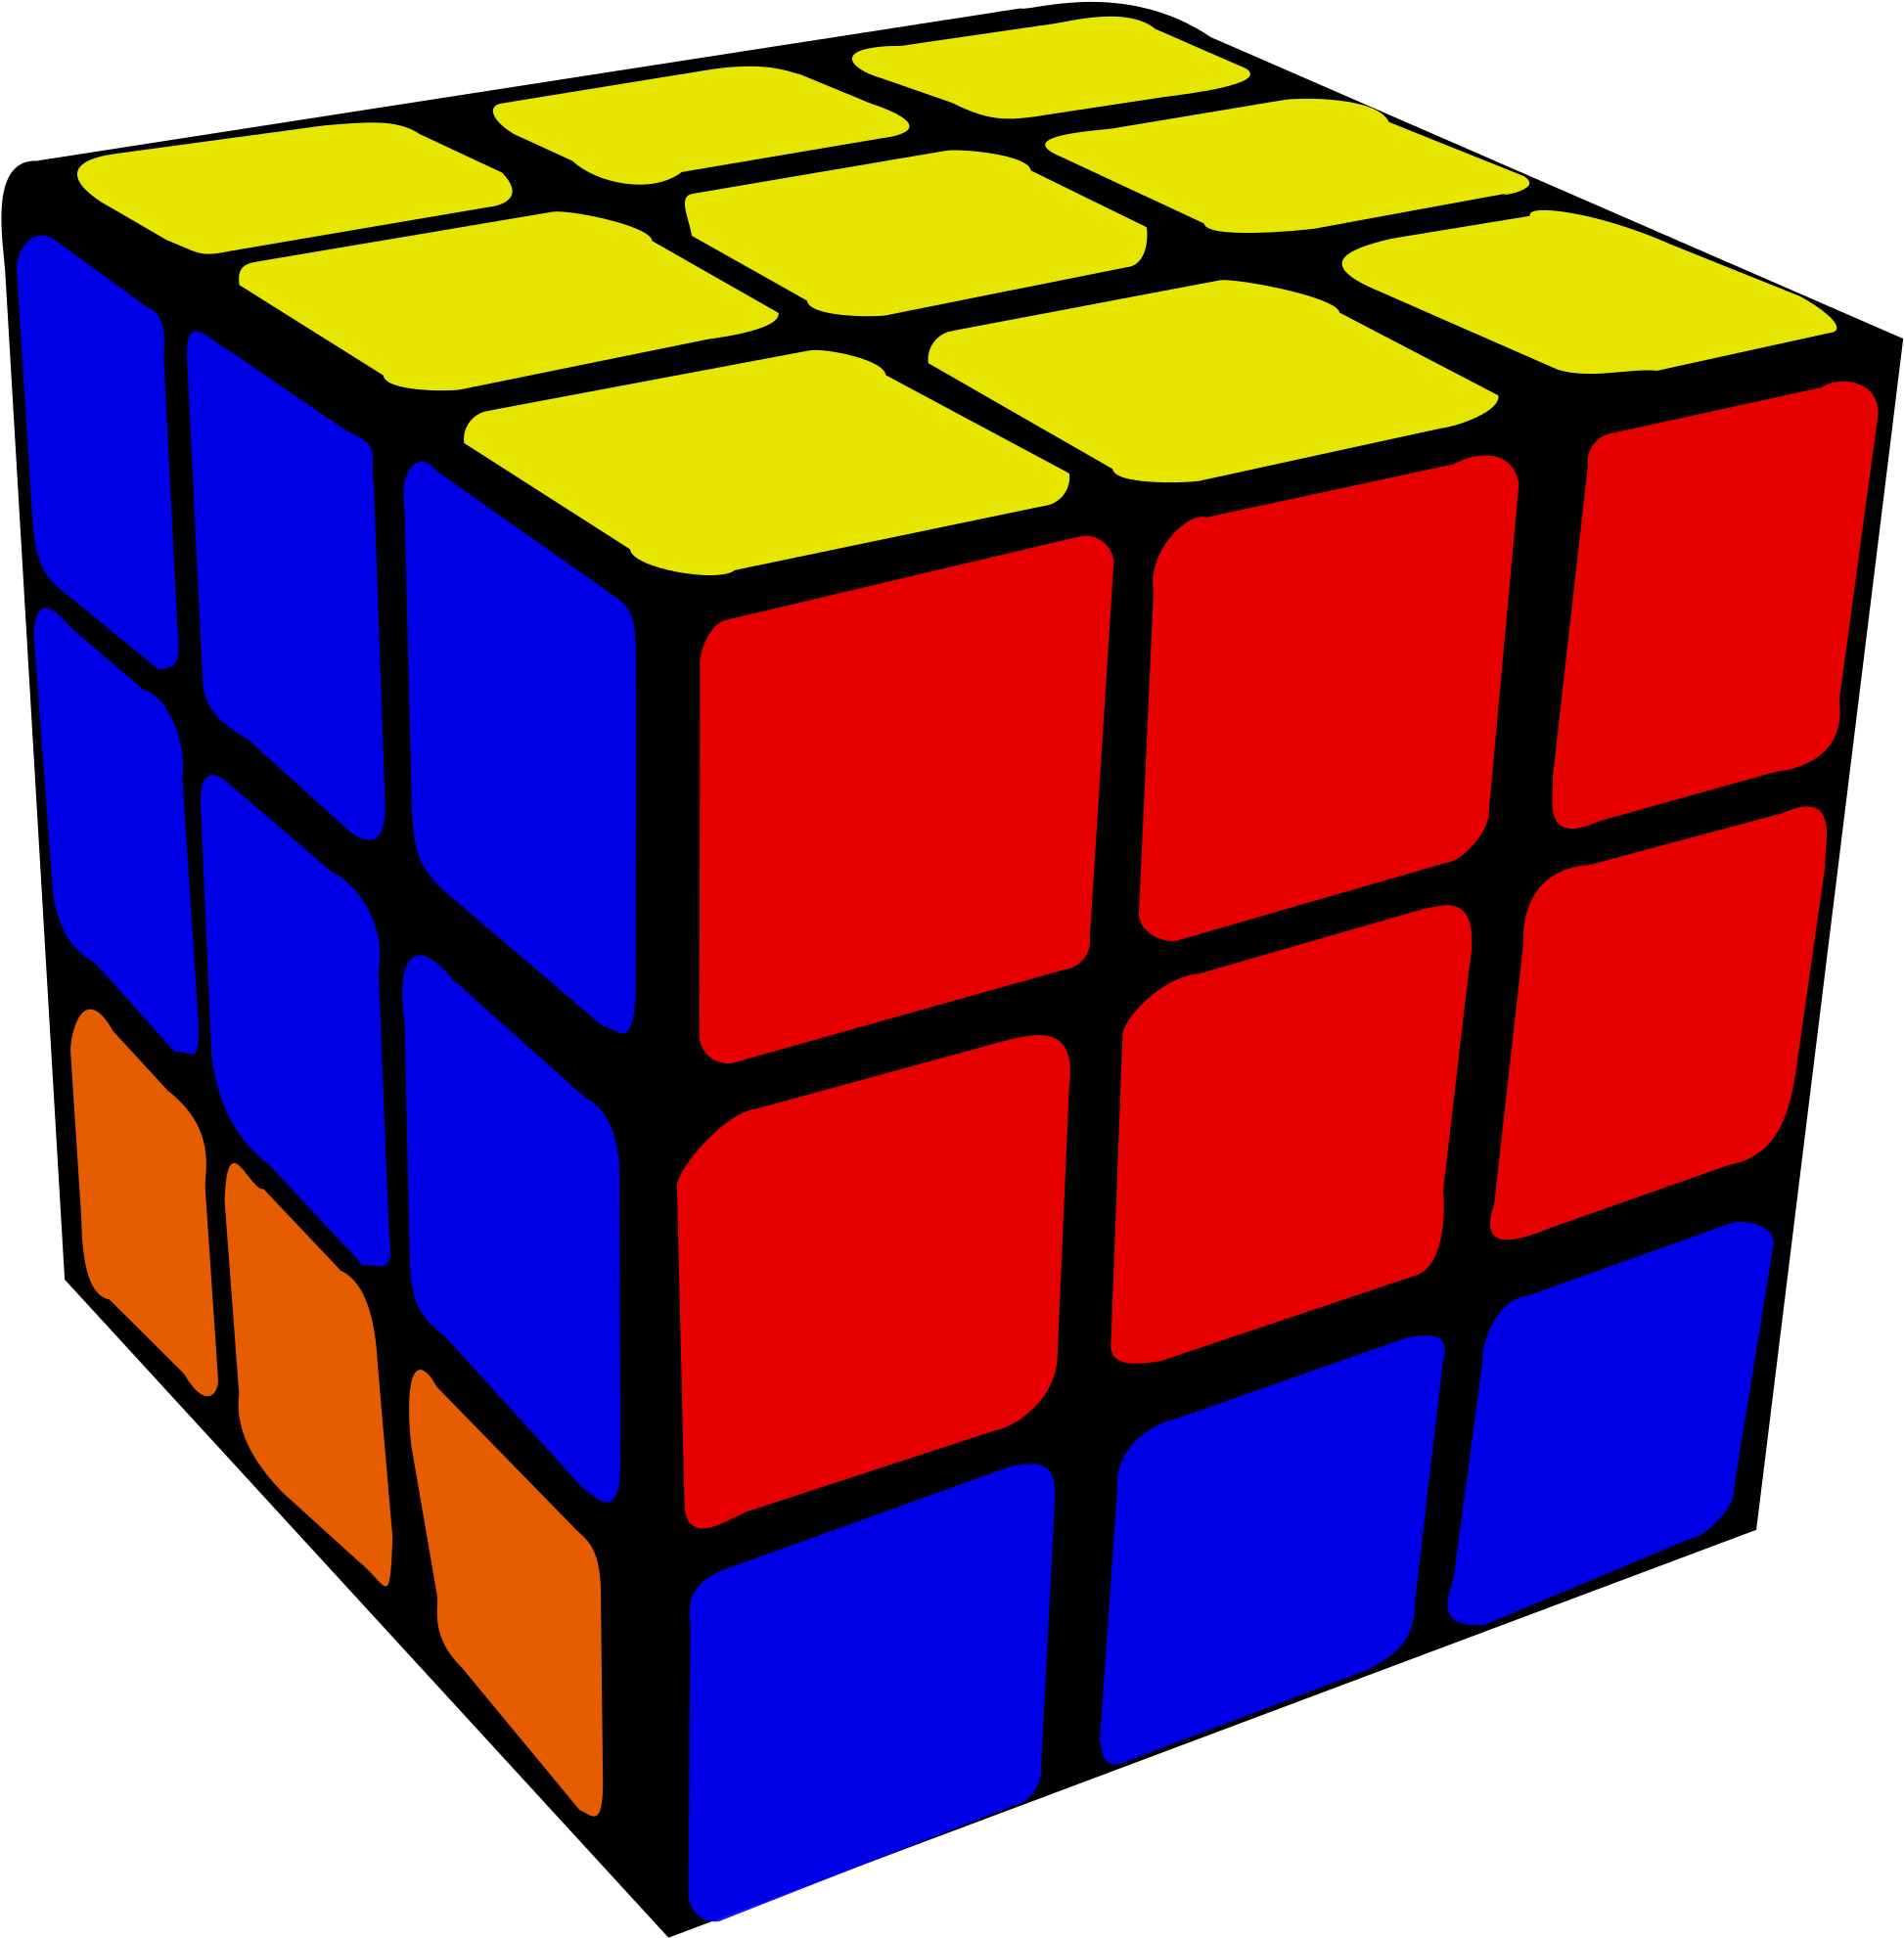 Покажи картинку кубики. Кубик Рубика. Кубик Рубика картинки. Кубик Рубика для печати. Изображение кубика Рубика.